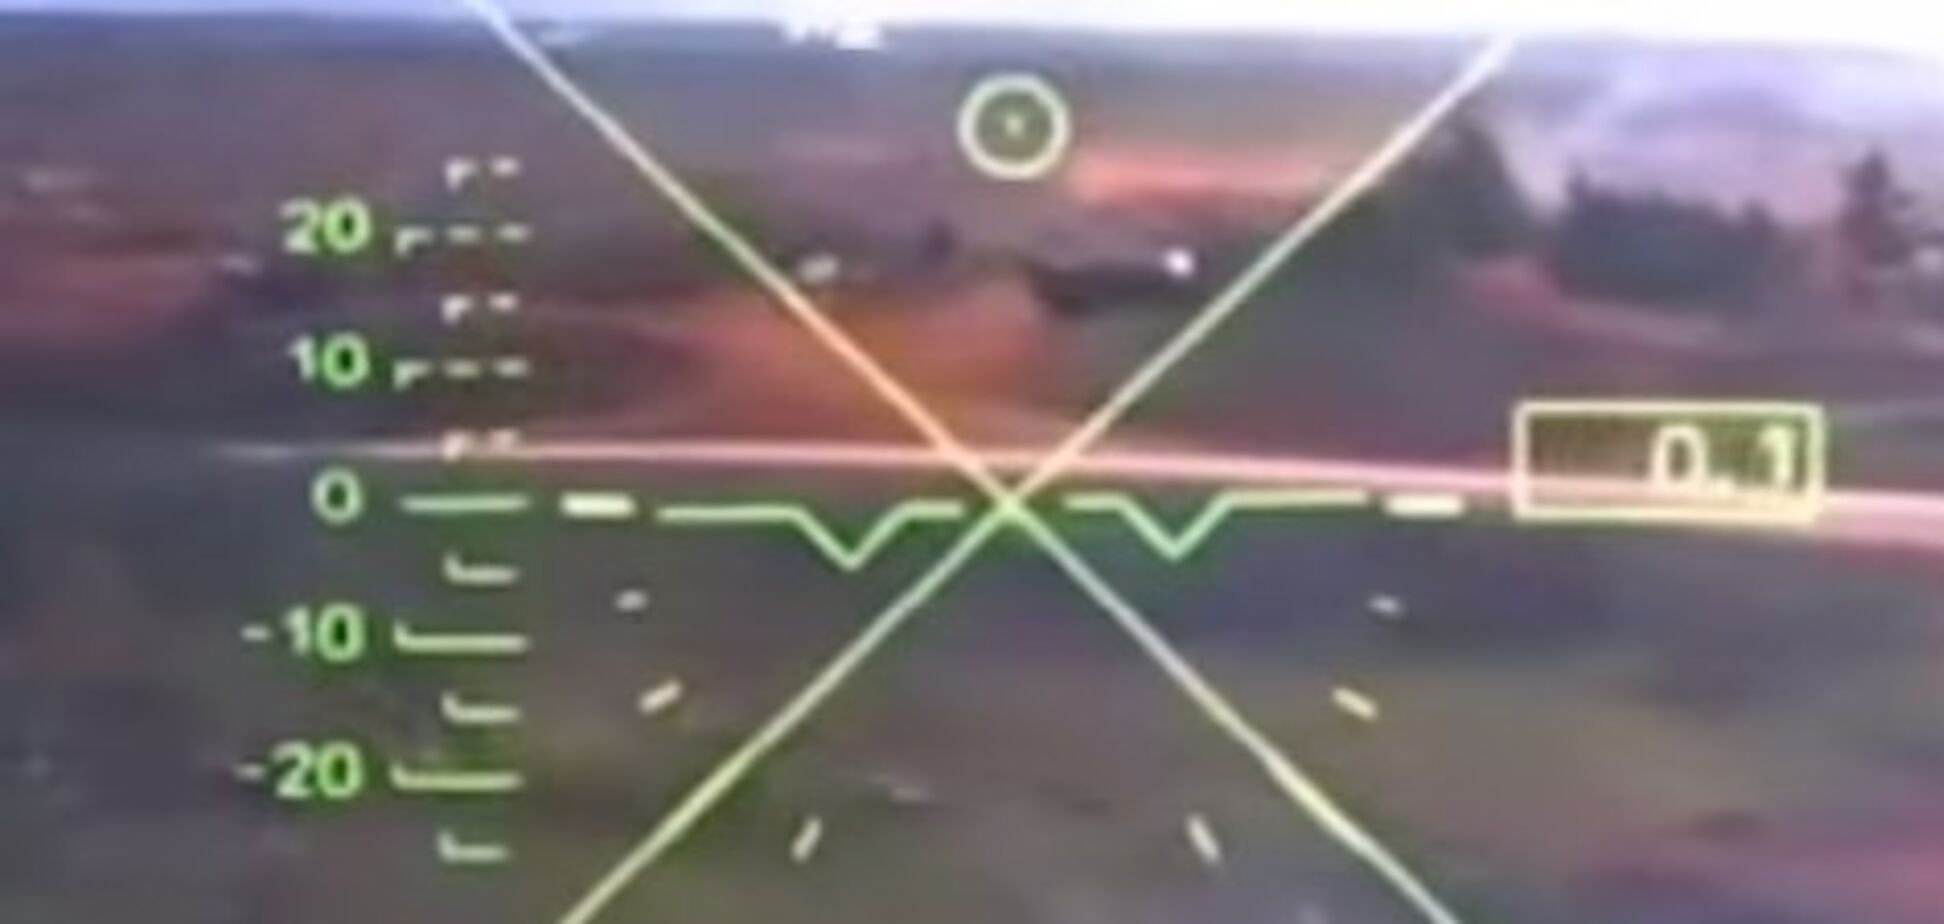 Ка-52 обстрелял зрителей на учениях: появилось видео из кабины пилота